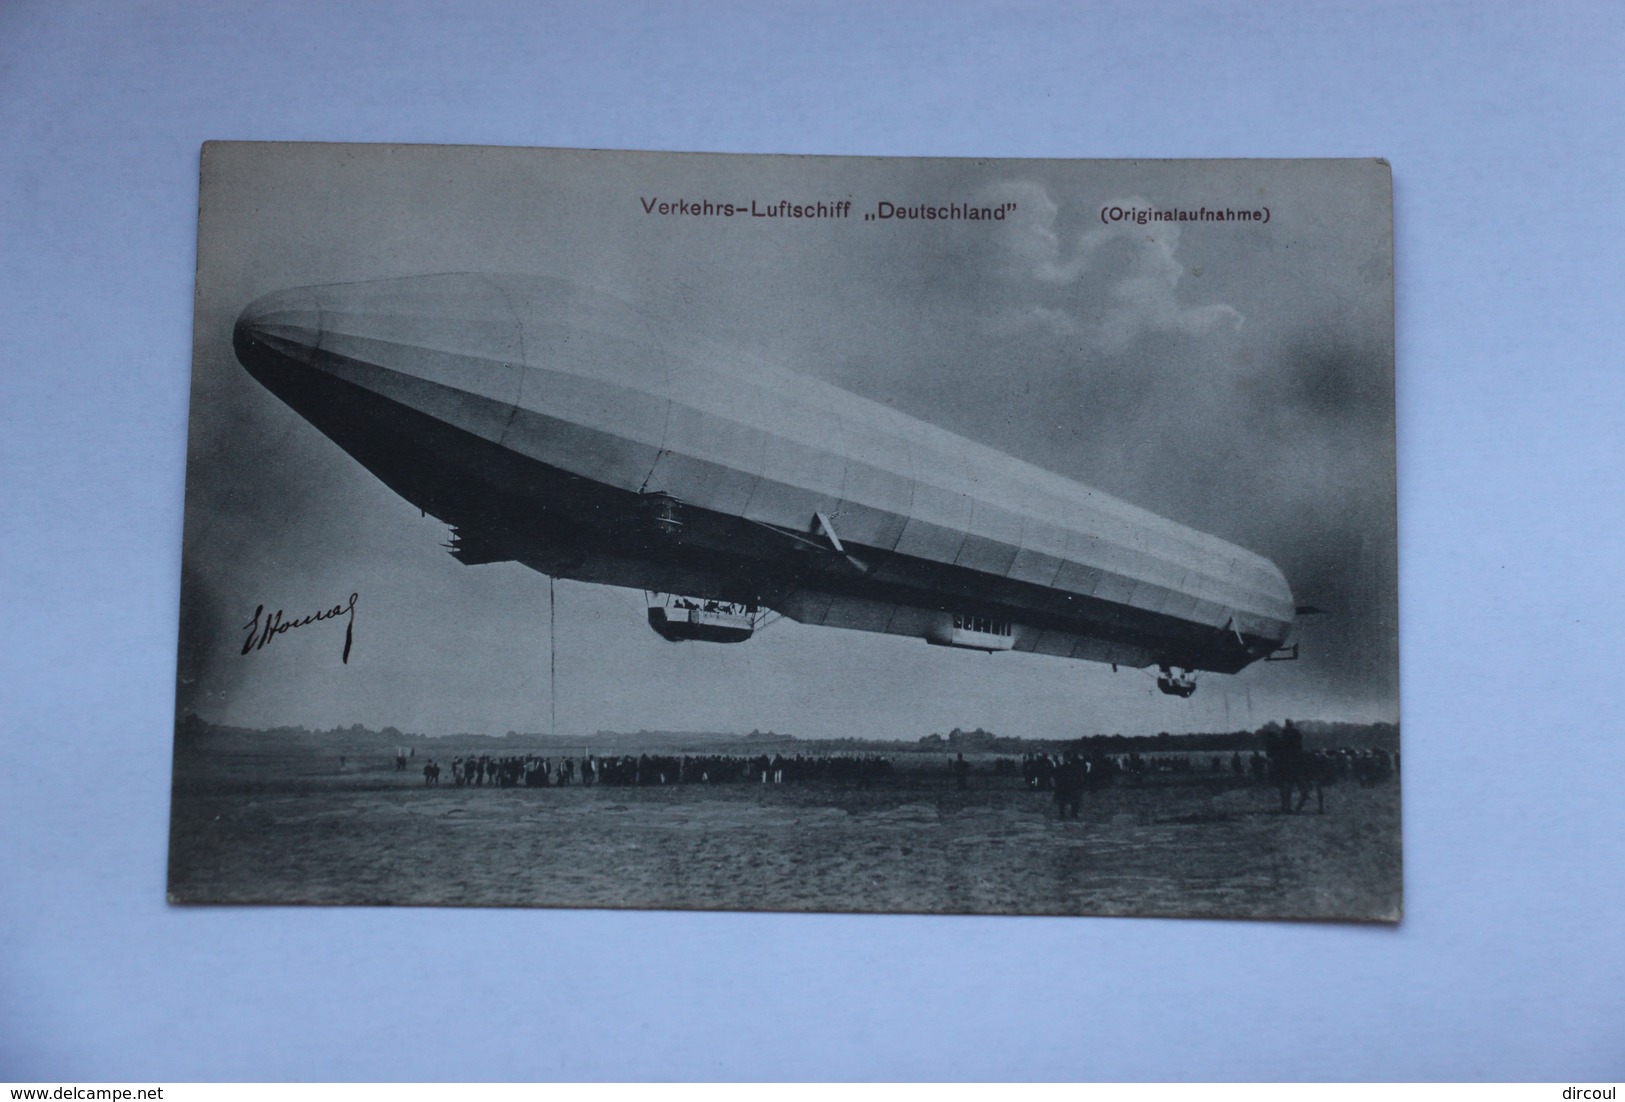 39398  -  Zeppelin  -  Verkehrs-Luftschiff   Deutschland   -originalaufnahme  -  2 - Dirigeables